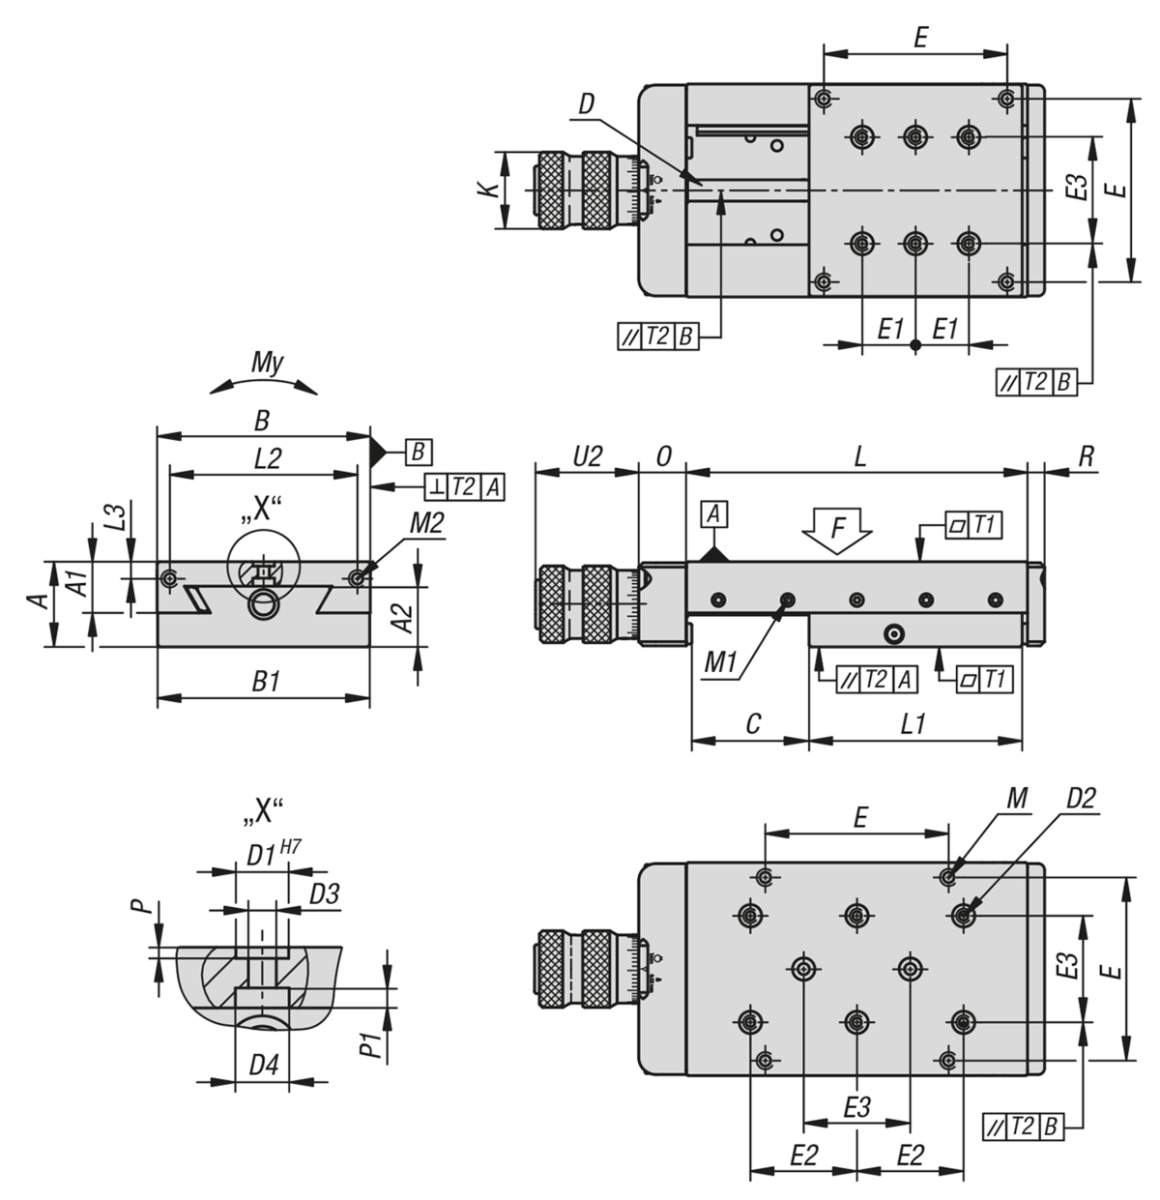 Dovetail slides with micrometer spindle and location holes